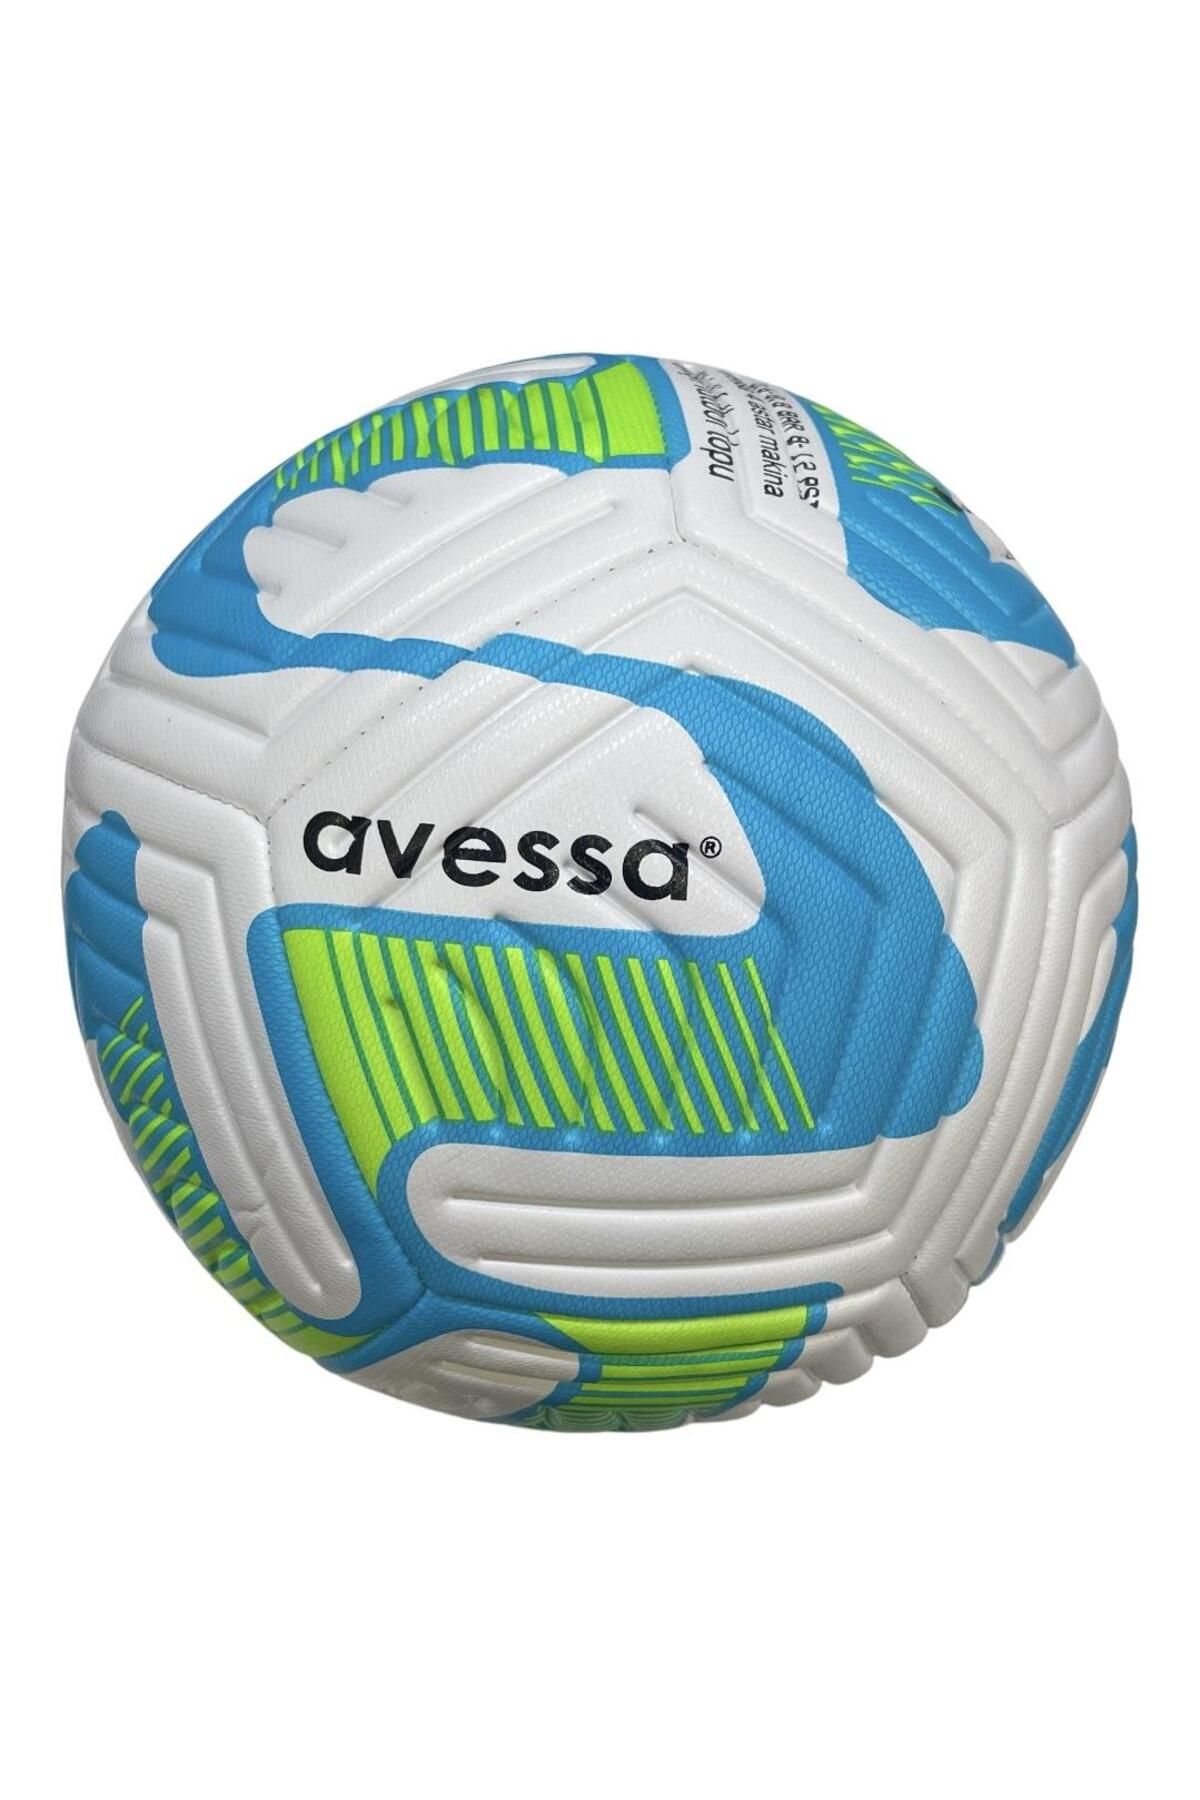 Avessa Ft-900-110 Turkuaz Futbol Topu 4 Astar